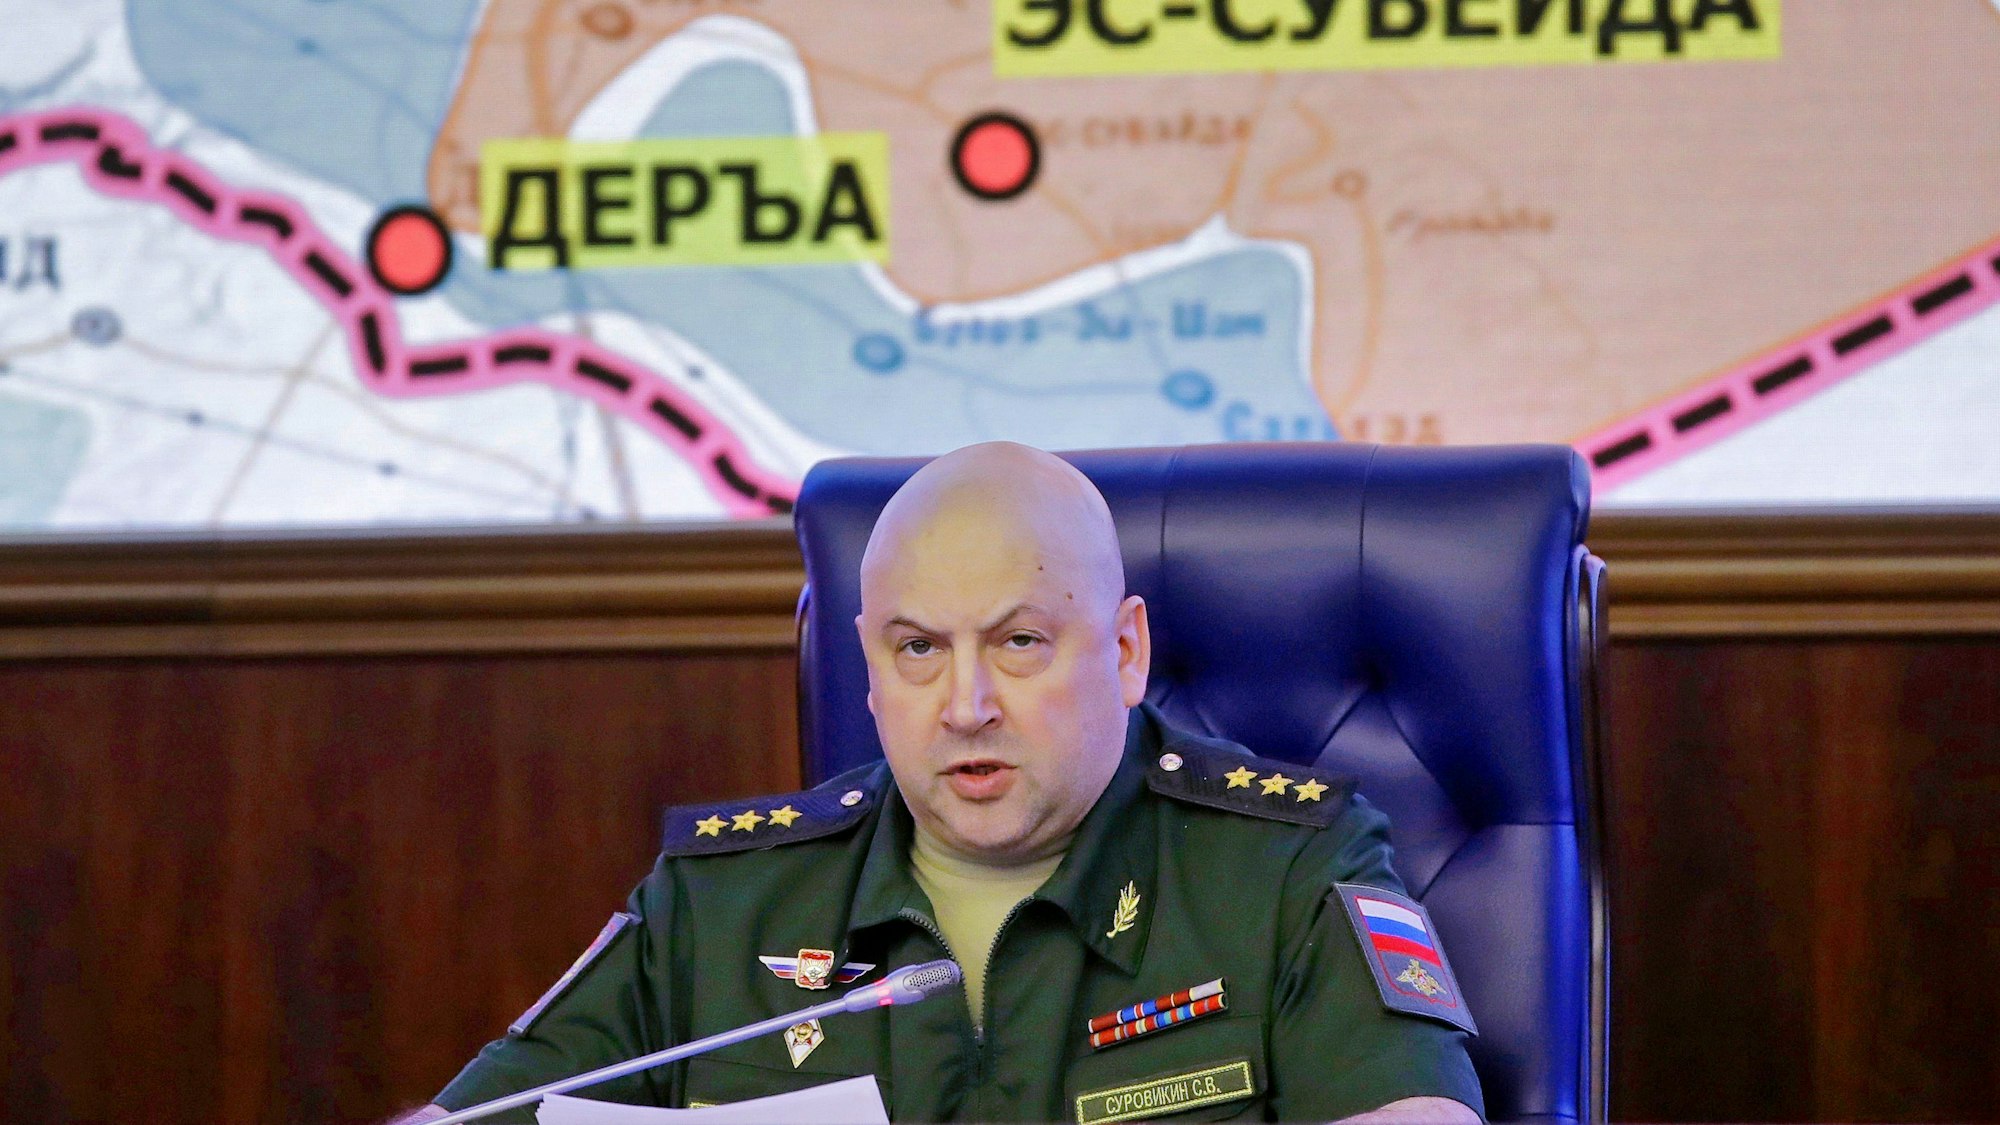 Der russische Kommandeur Sergej Surowikin, hier auf einem Foto aus dem Jahr 2017, soll nach zahlreichen Niederlagen die russischen Truppen anführen.